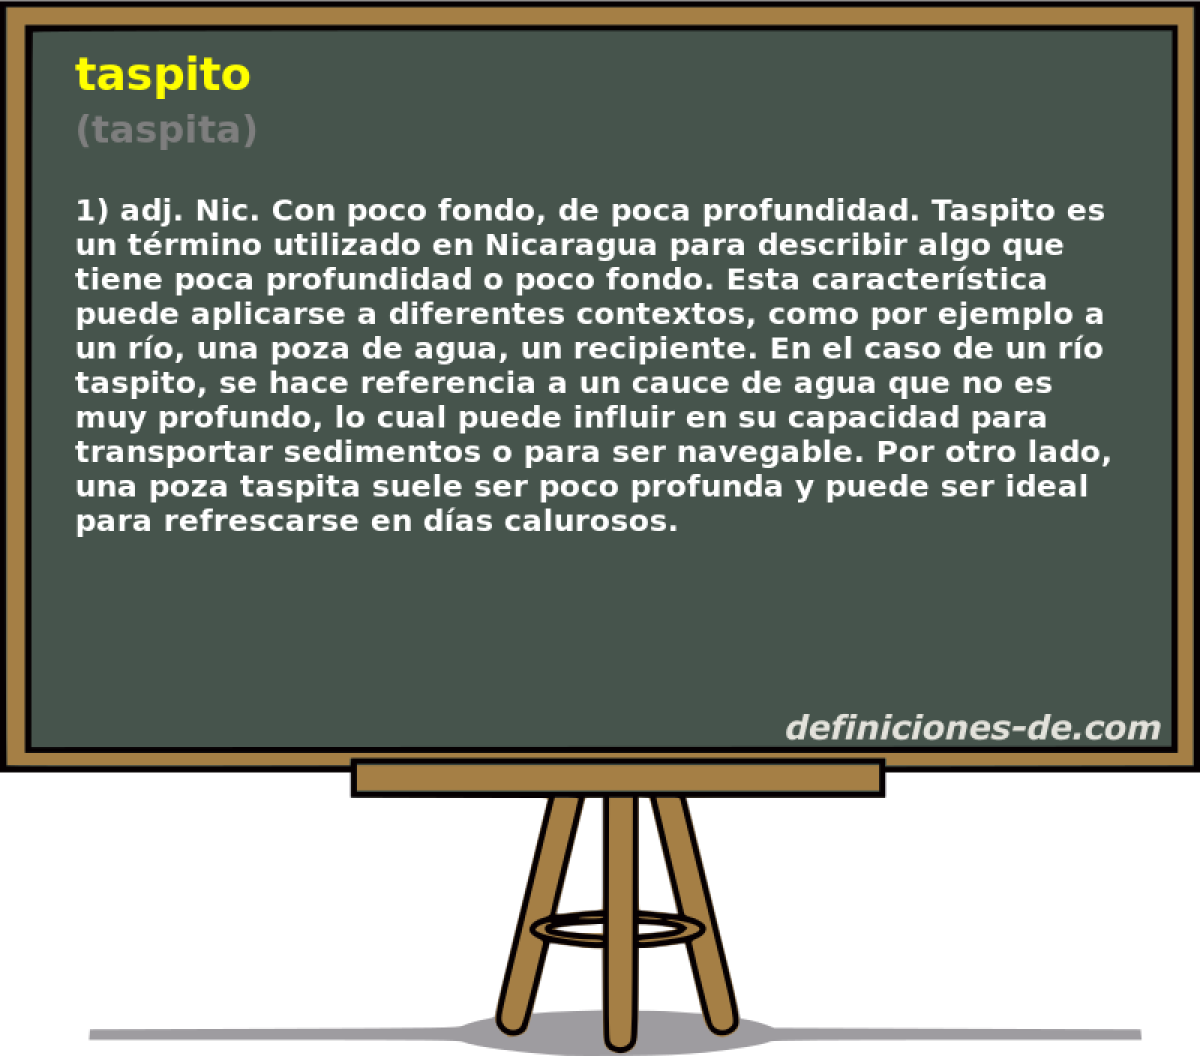 taspito (taspita)